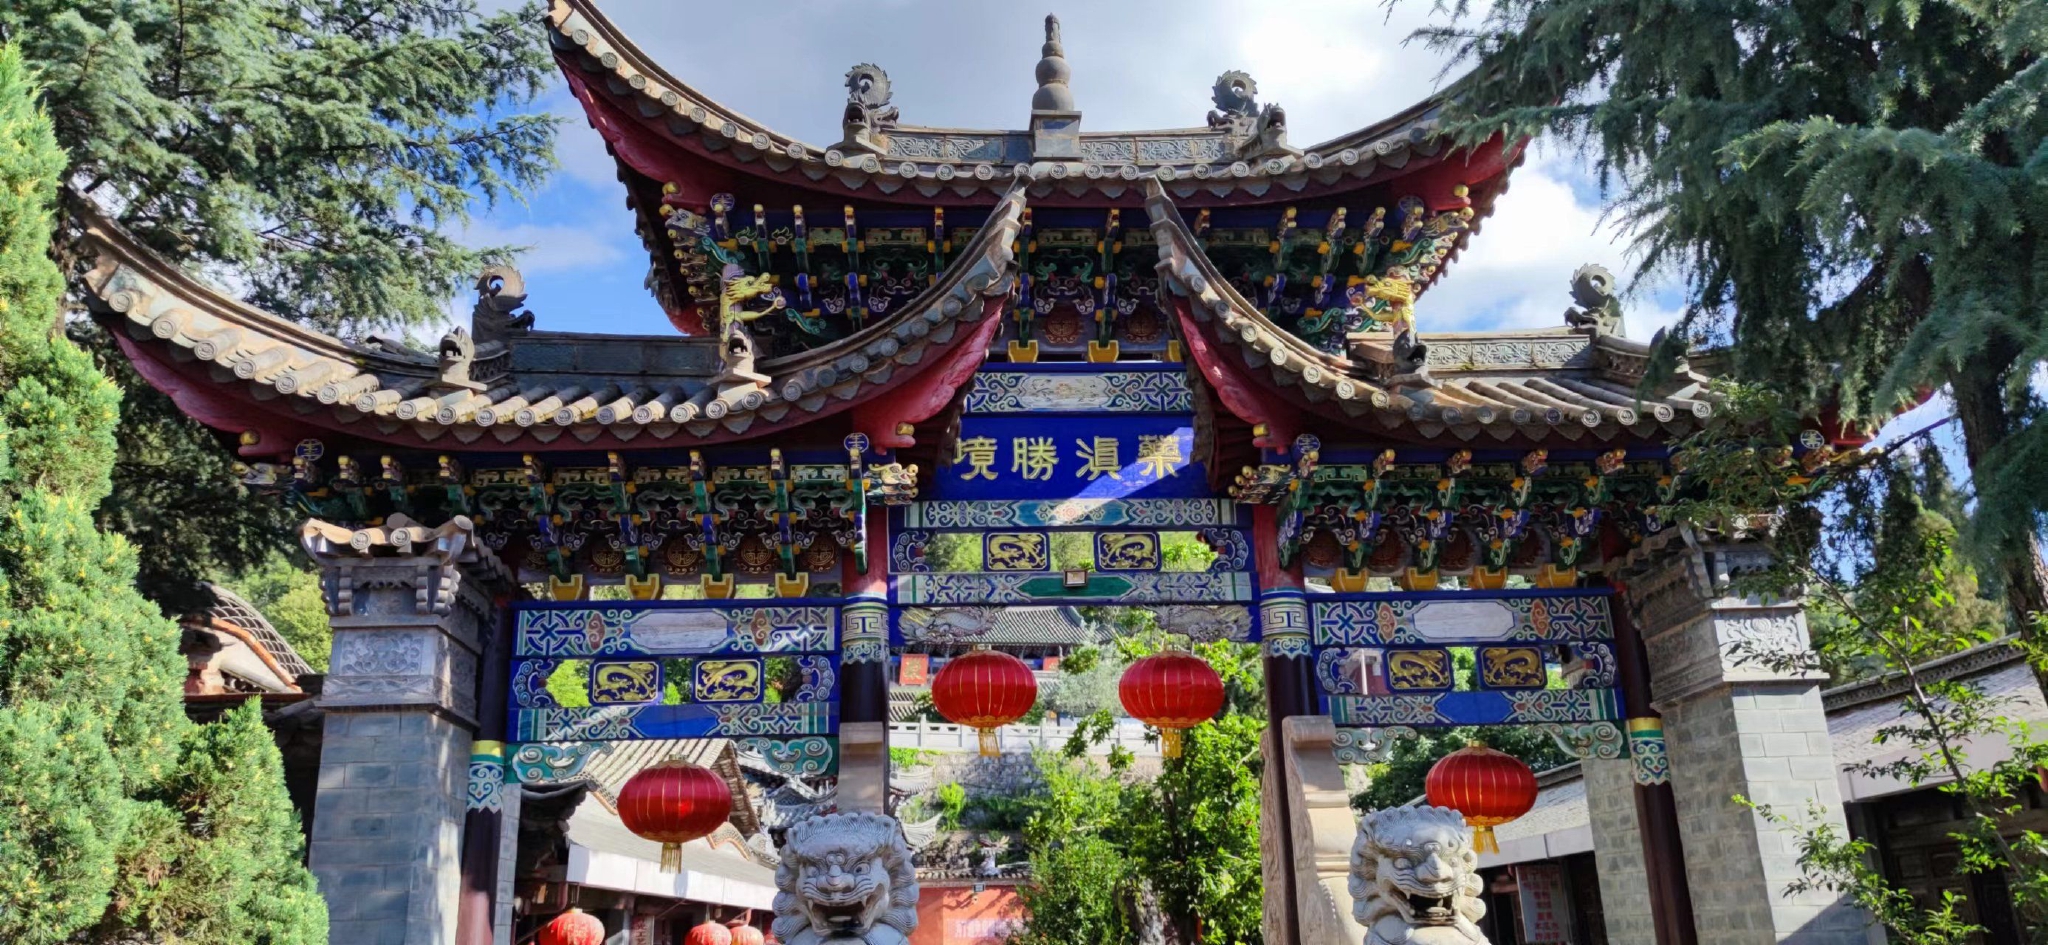 昆明筇竹寺五百罗汉被誉为「东方雕塑艺术宝库中一颗璀璨的明珠」，其艺术成就为何如此之高？ - 知乎